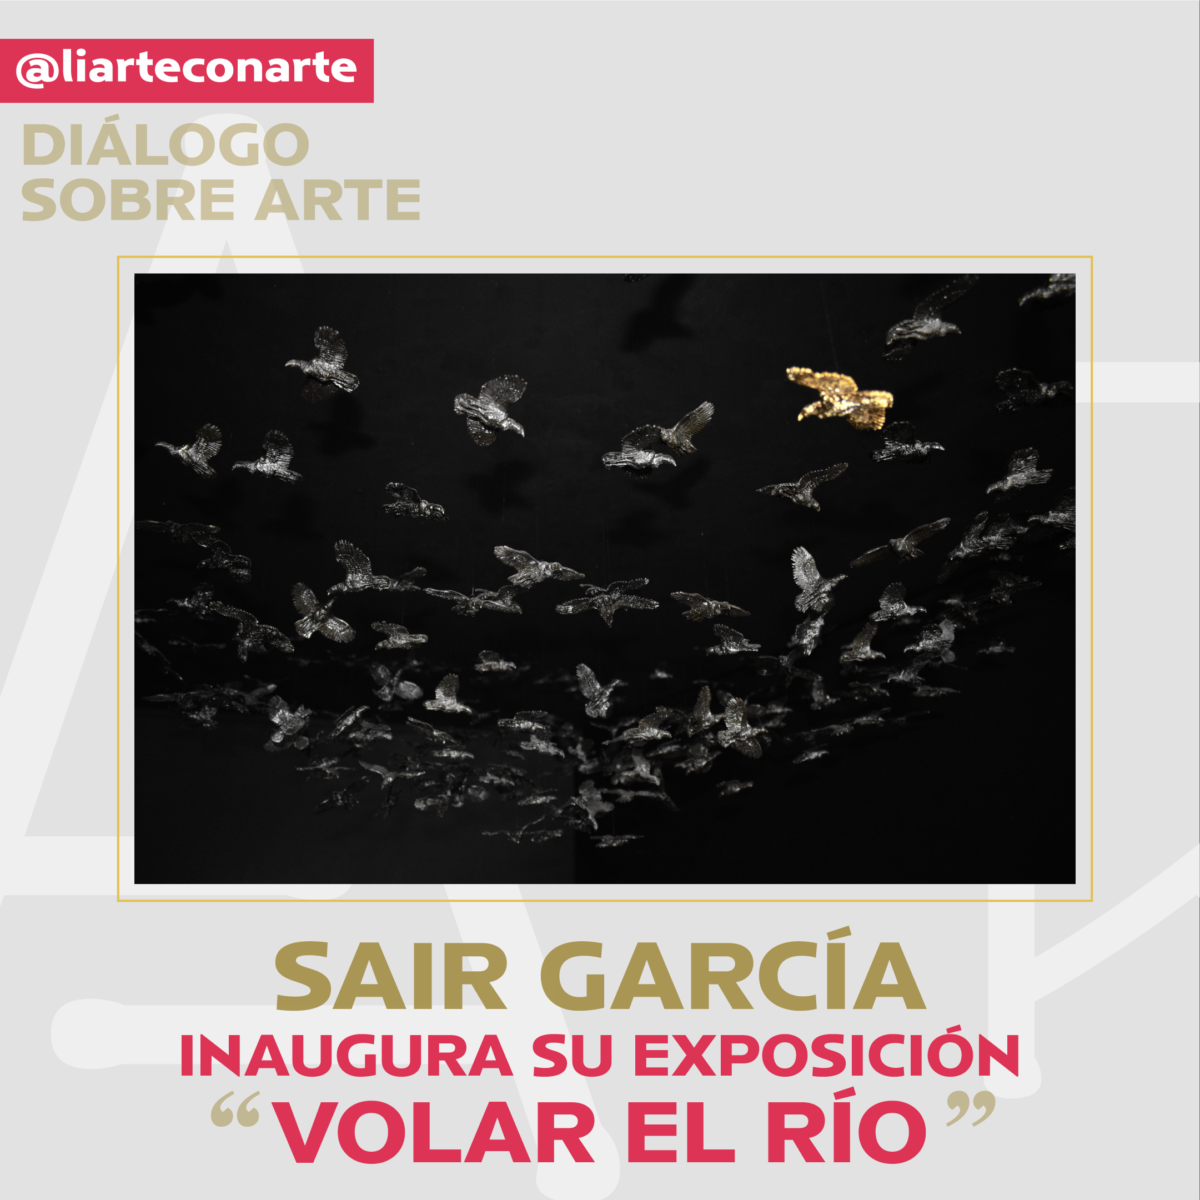 Sair García inaugura su exposición “Volar el río”